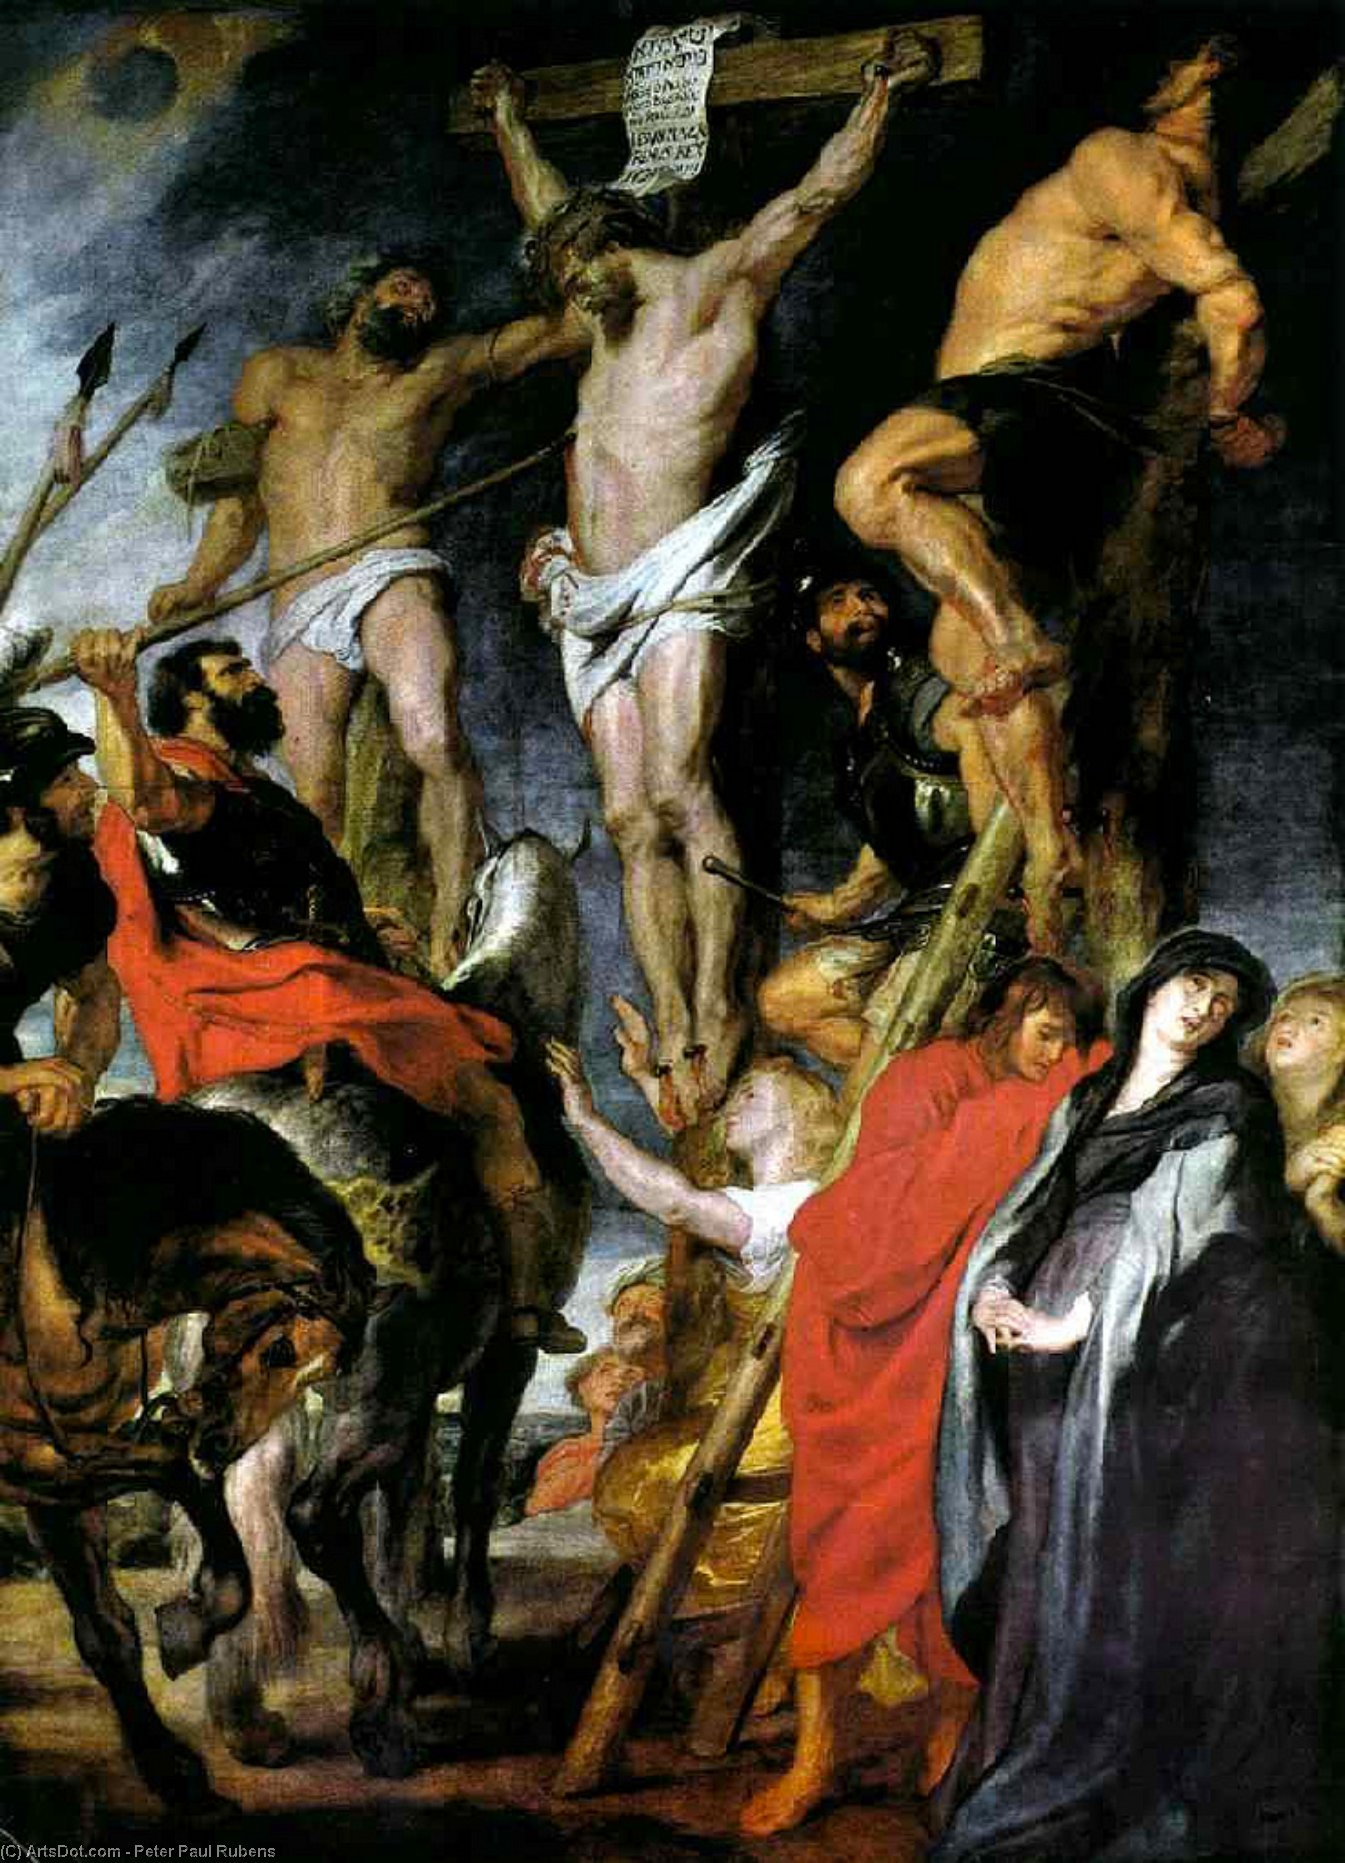 WikiOO.org - אנציקלופדיה לאמנויות יפות - ציור, יצירות אמנות Peter Paul Rubens - Le coup de lance, Musée des Beaux-Artes, Antwer